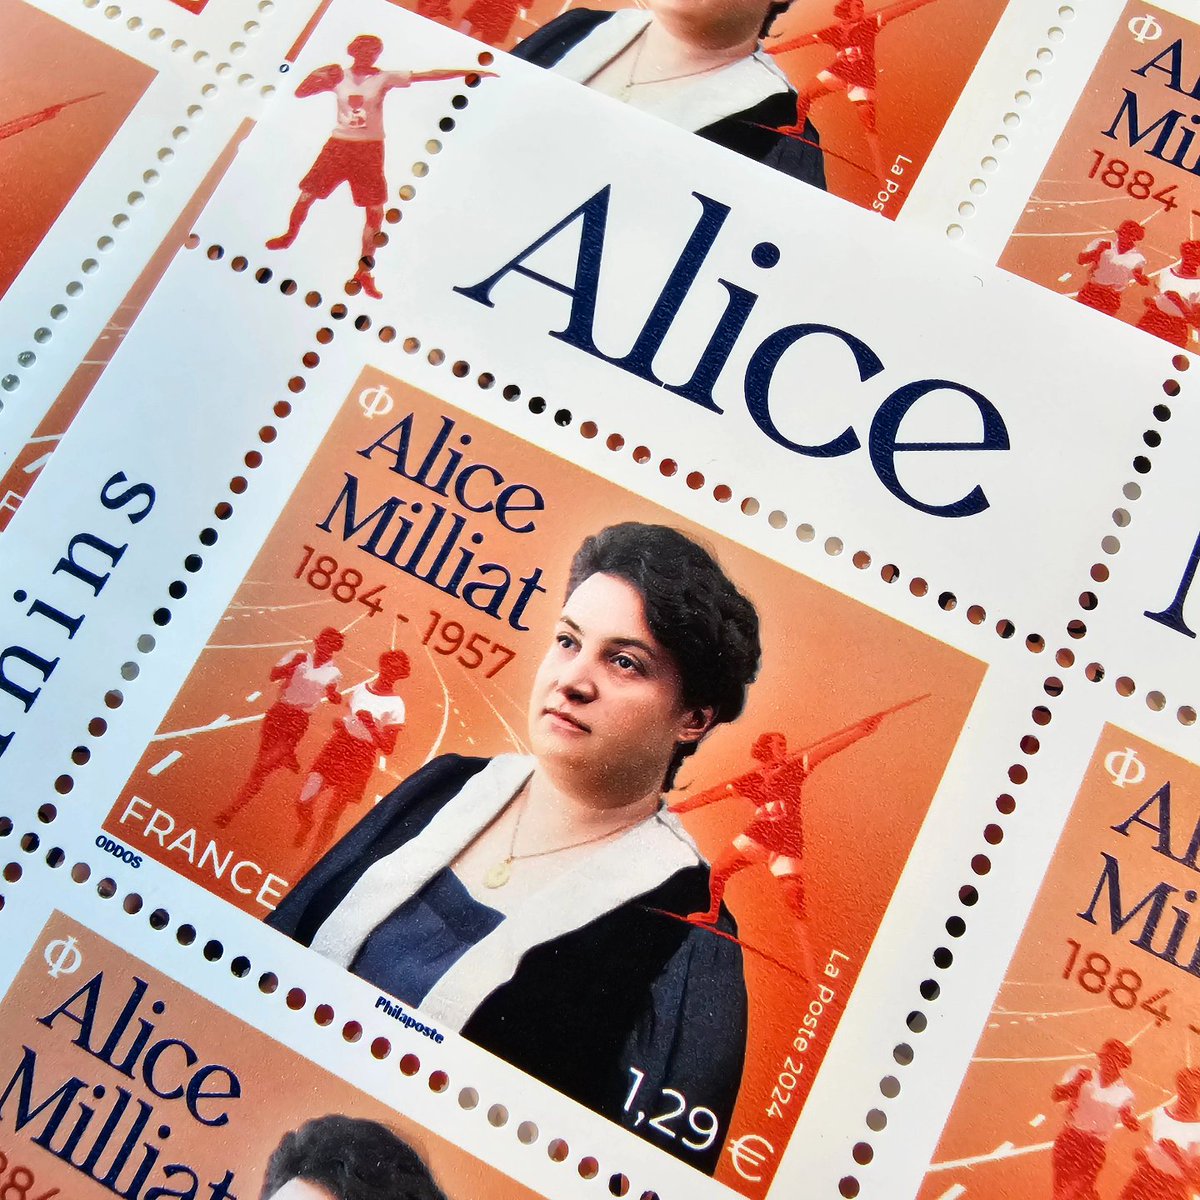 Le lancement en avant-première du #timbre hommage à Alice MILLIAT se poursuit ce samedi 4 mai 📍à #Nantes : La Maison des Hommes et Techniques de 10h à 17h, 2bis Bd Léon Bureau 📍et au Carré d'Encre, #Paris 9e de 10h à 19h @StephaneGachet @LePoint @lessportivesmag @bbarbusse